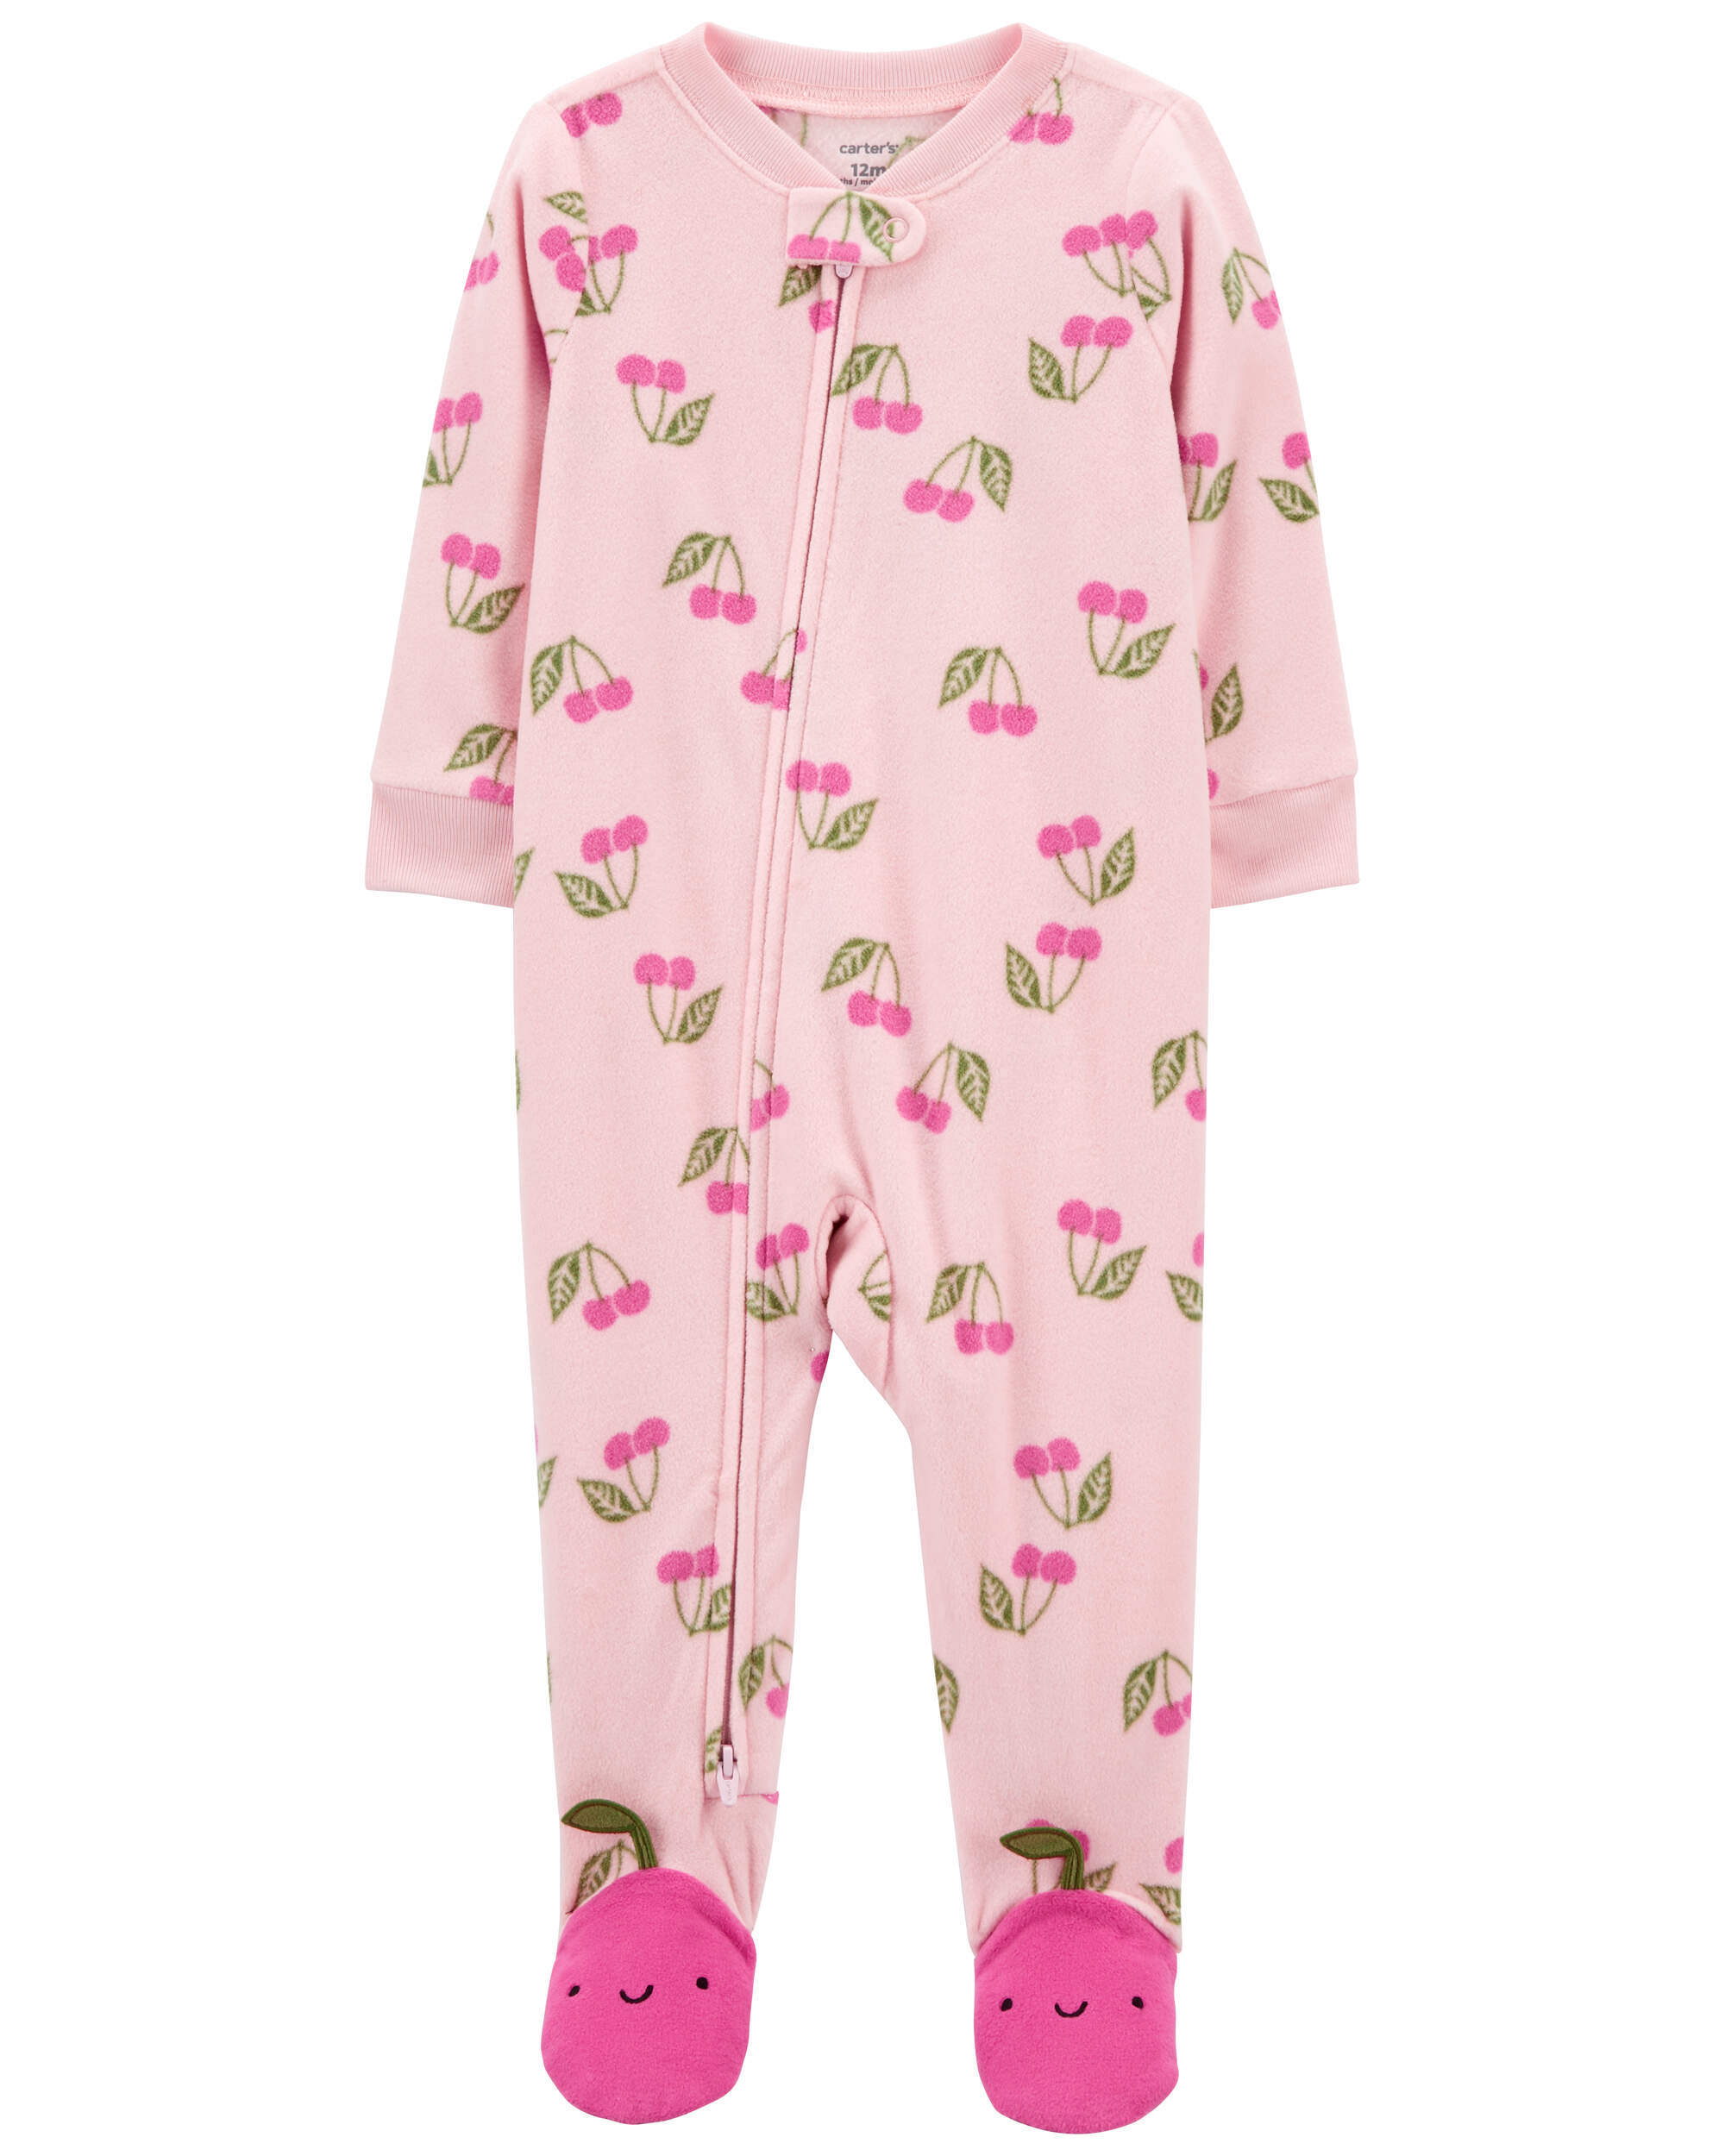 Toddler 1-Piece Cherry Fleece Footie Pyjamas